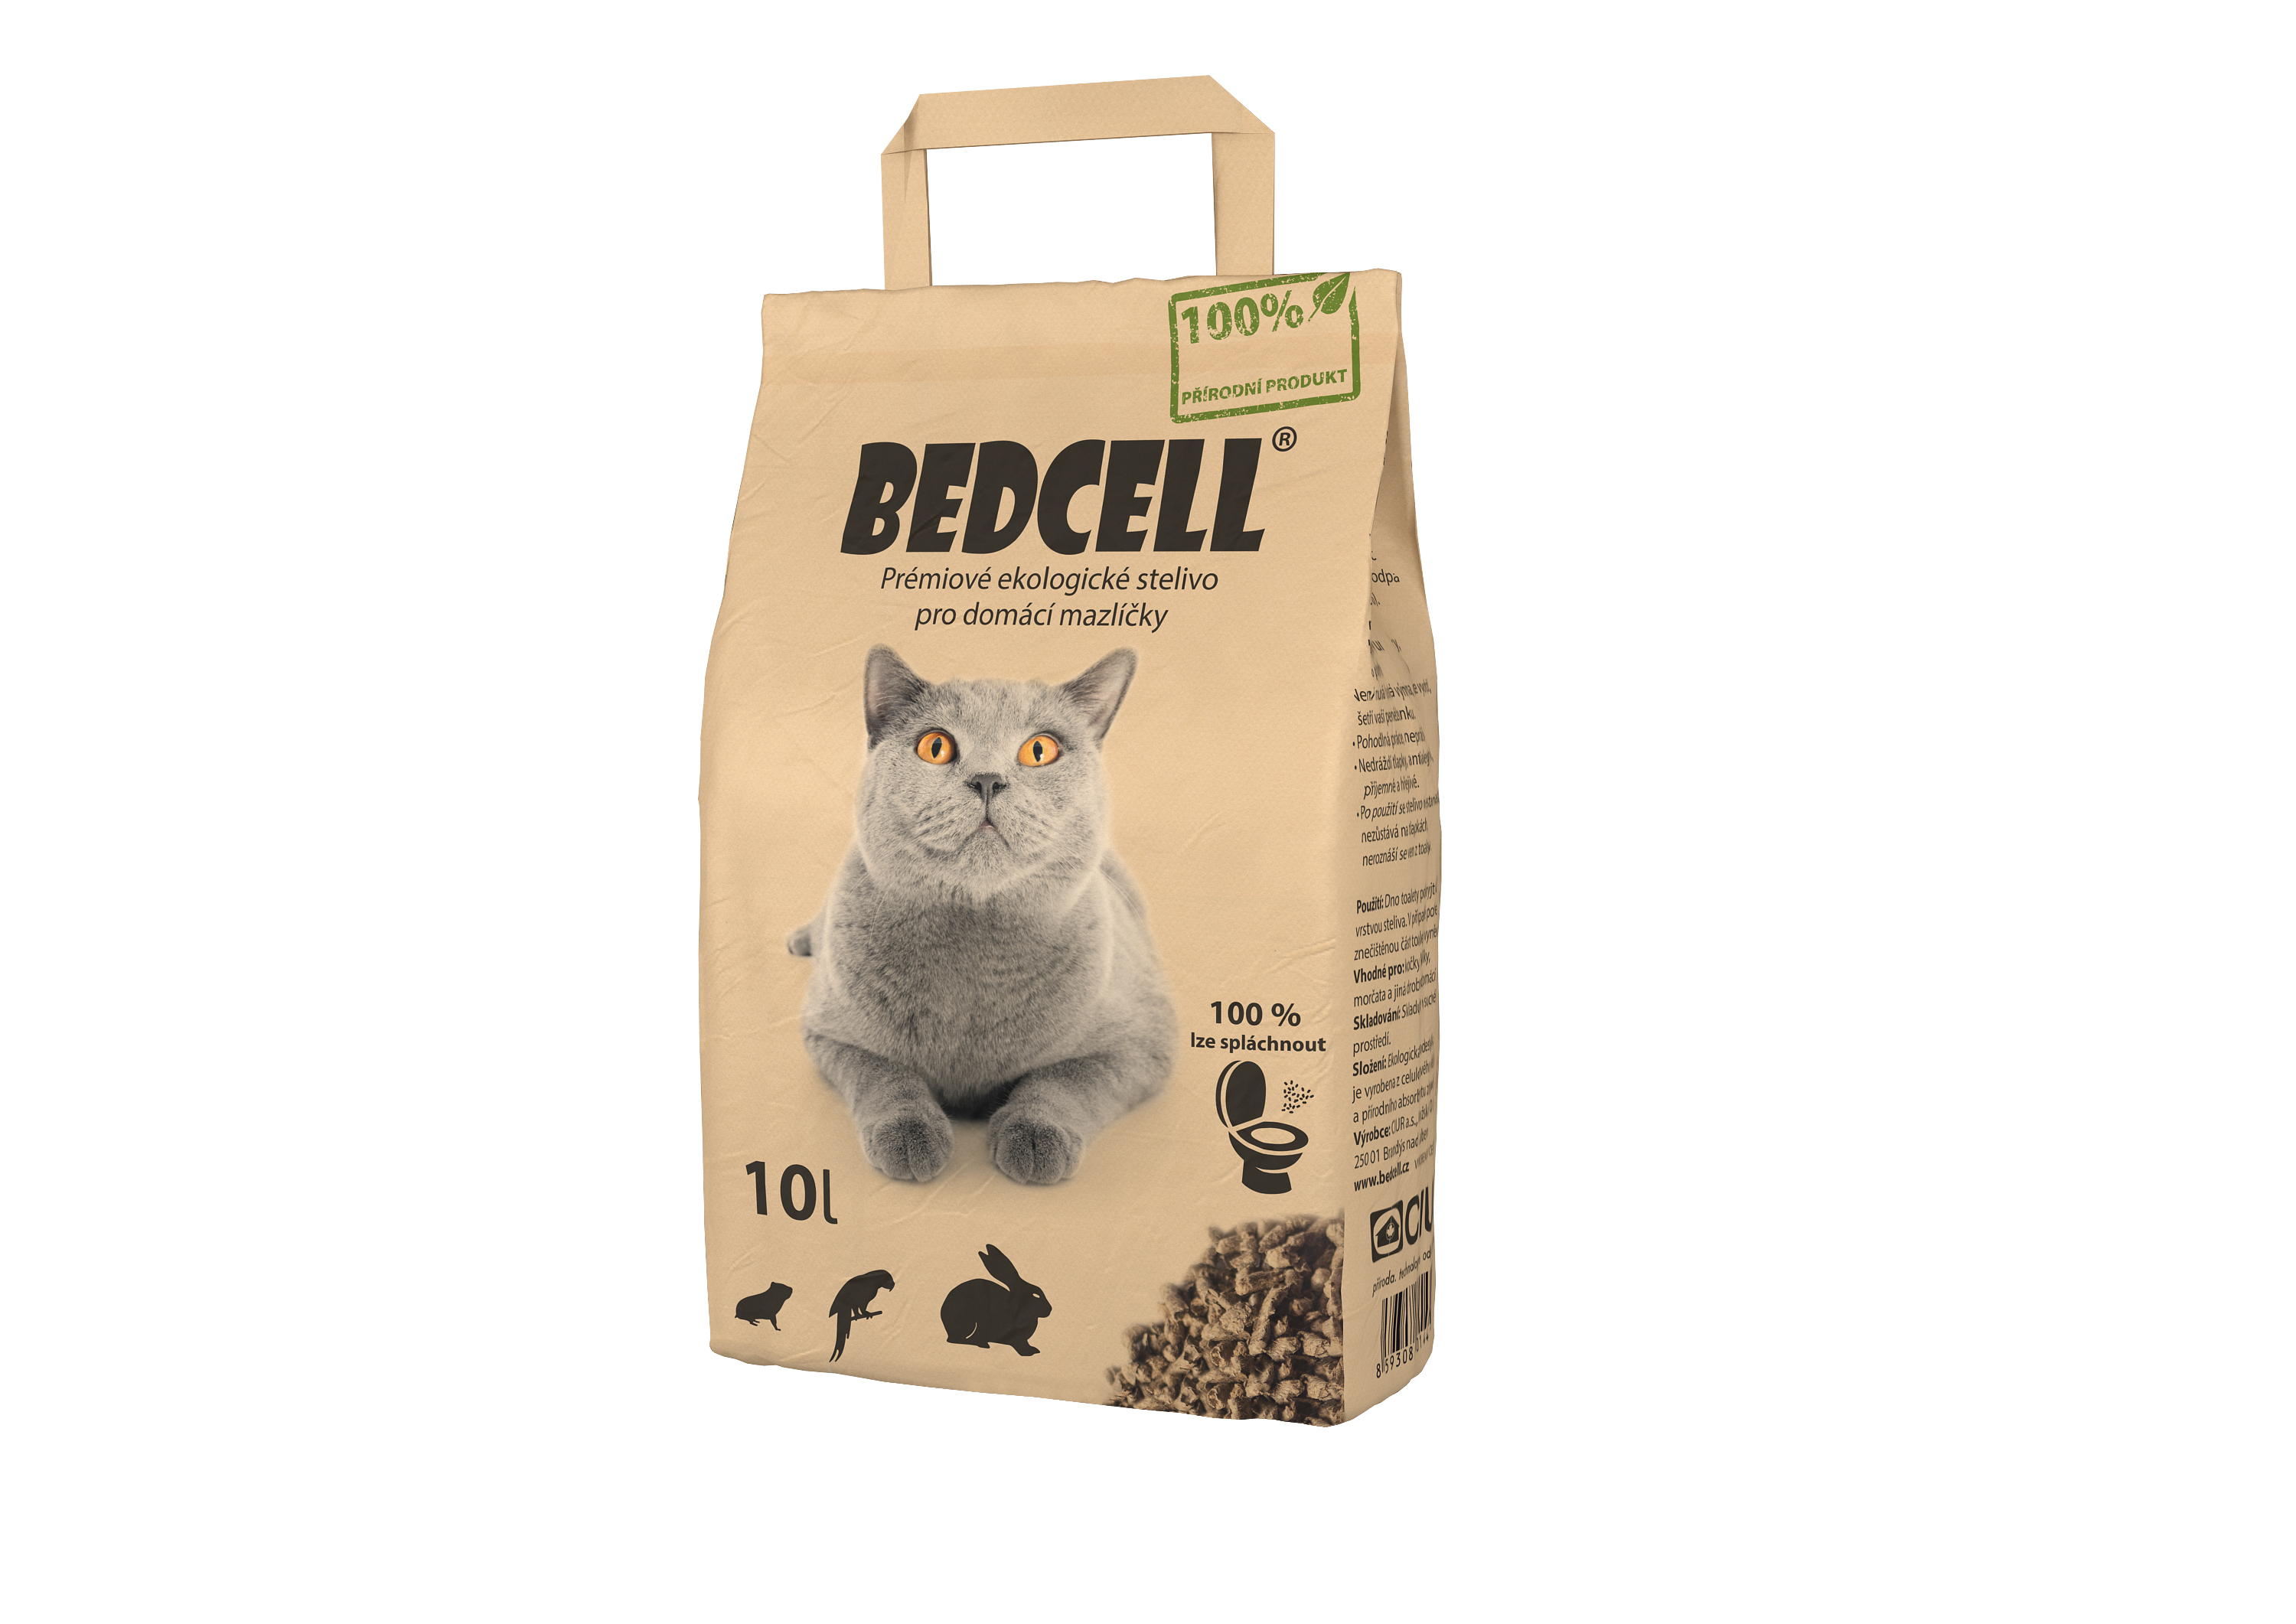 Koupí steliva Bedcell podpoříte dobrou věc